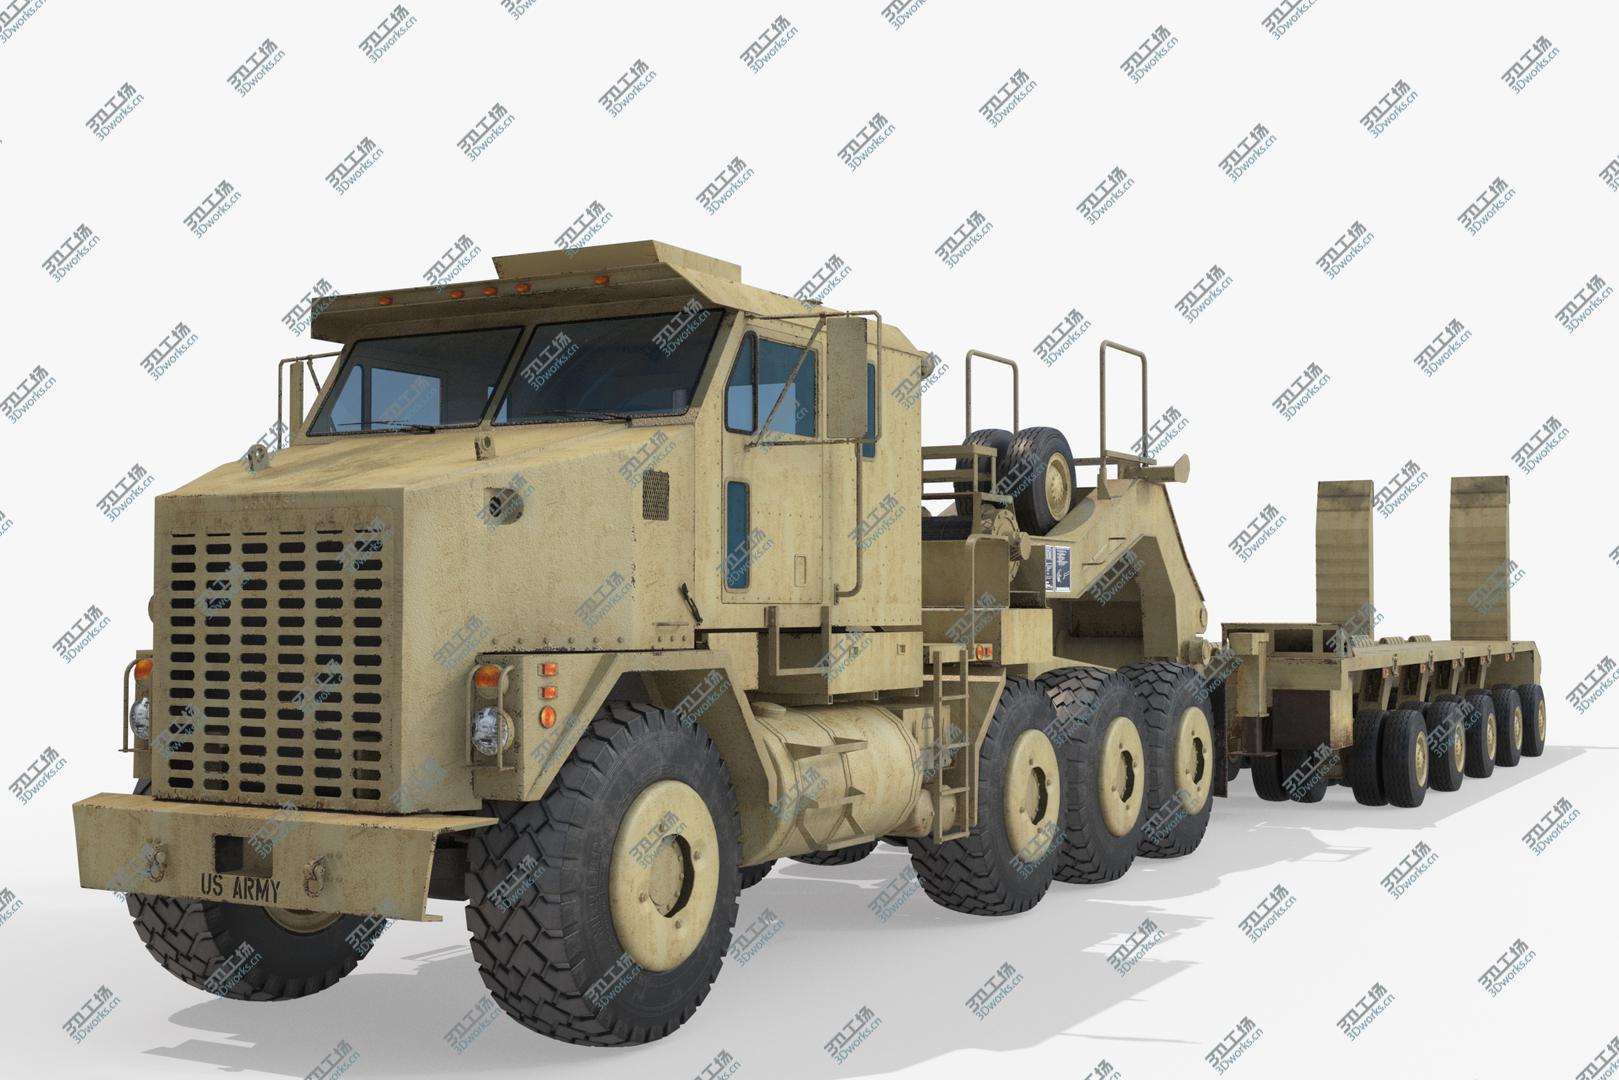 images/goods_img/20210319/Oshkosh M1070 Truck M1000 3D model/5.jpg